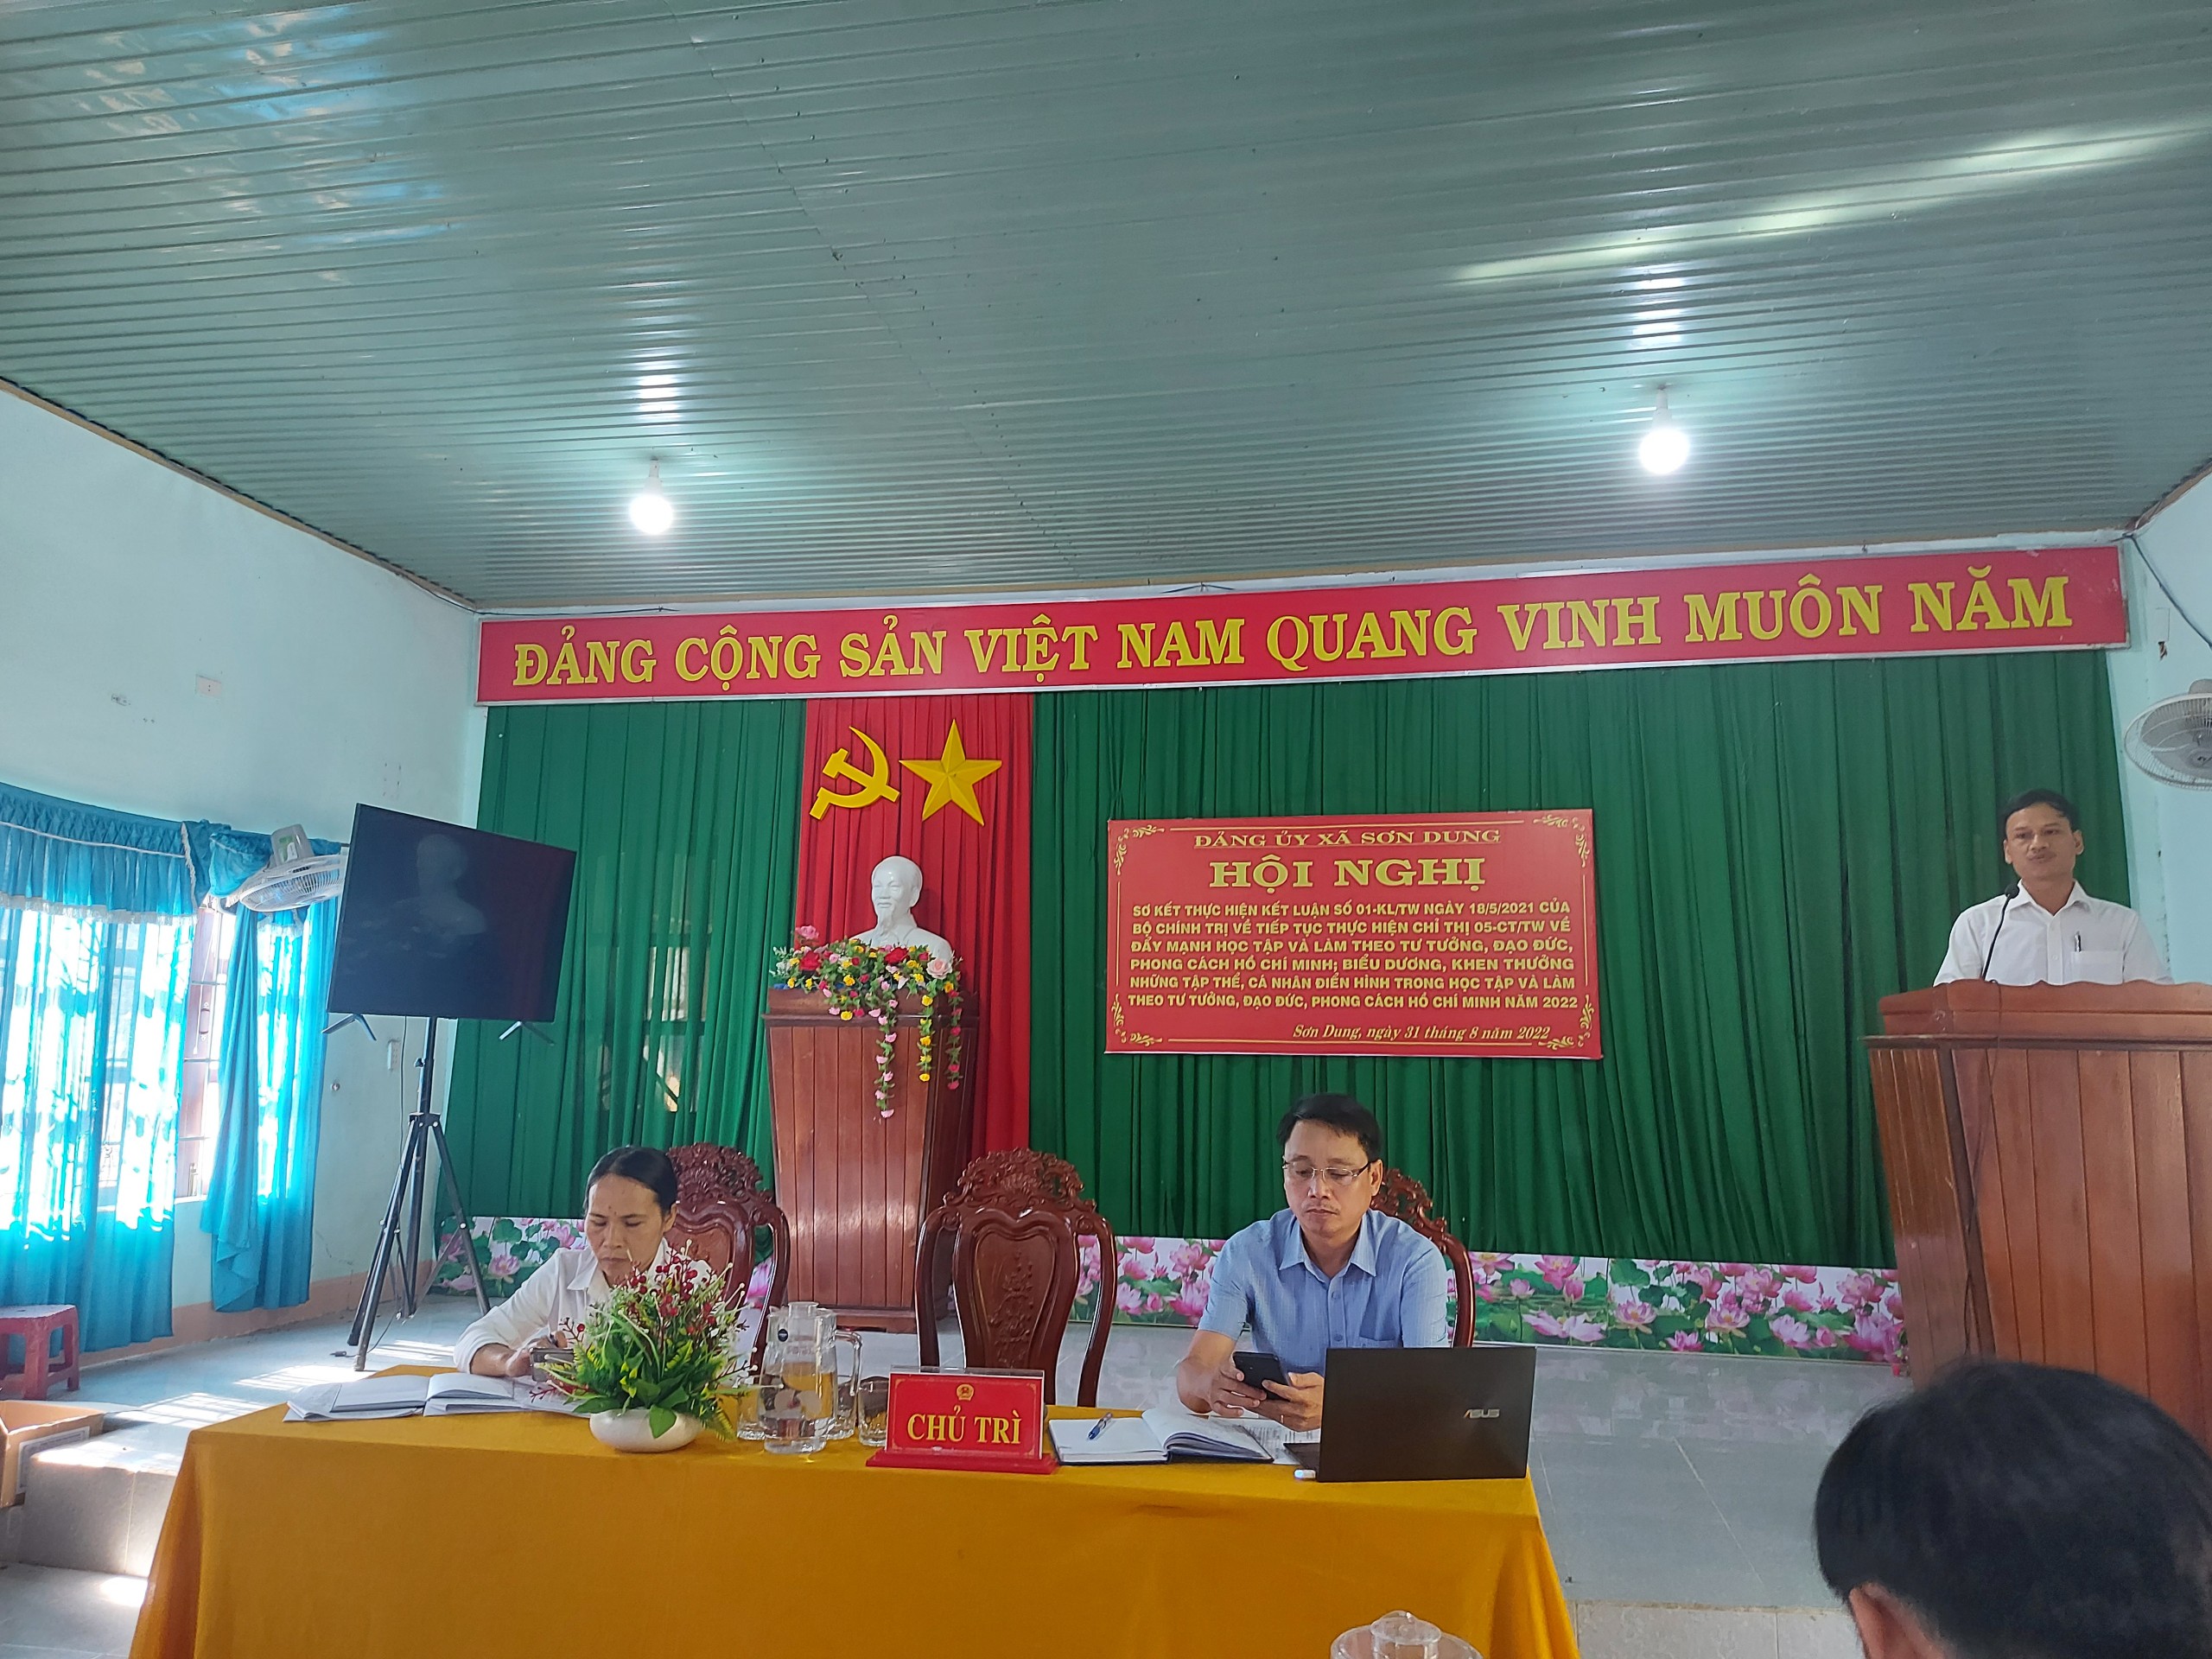 Đảng ủy xã Sơn Dung đã tổ chức Hội nghị sơ kết thực hiện Kết luận số 01-KL/TW ngày 18/5/2021 của Bộ Chính trị